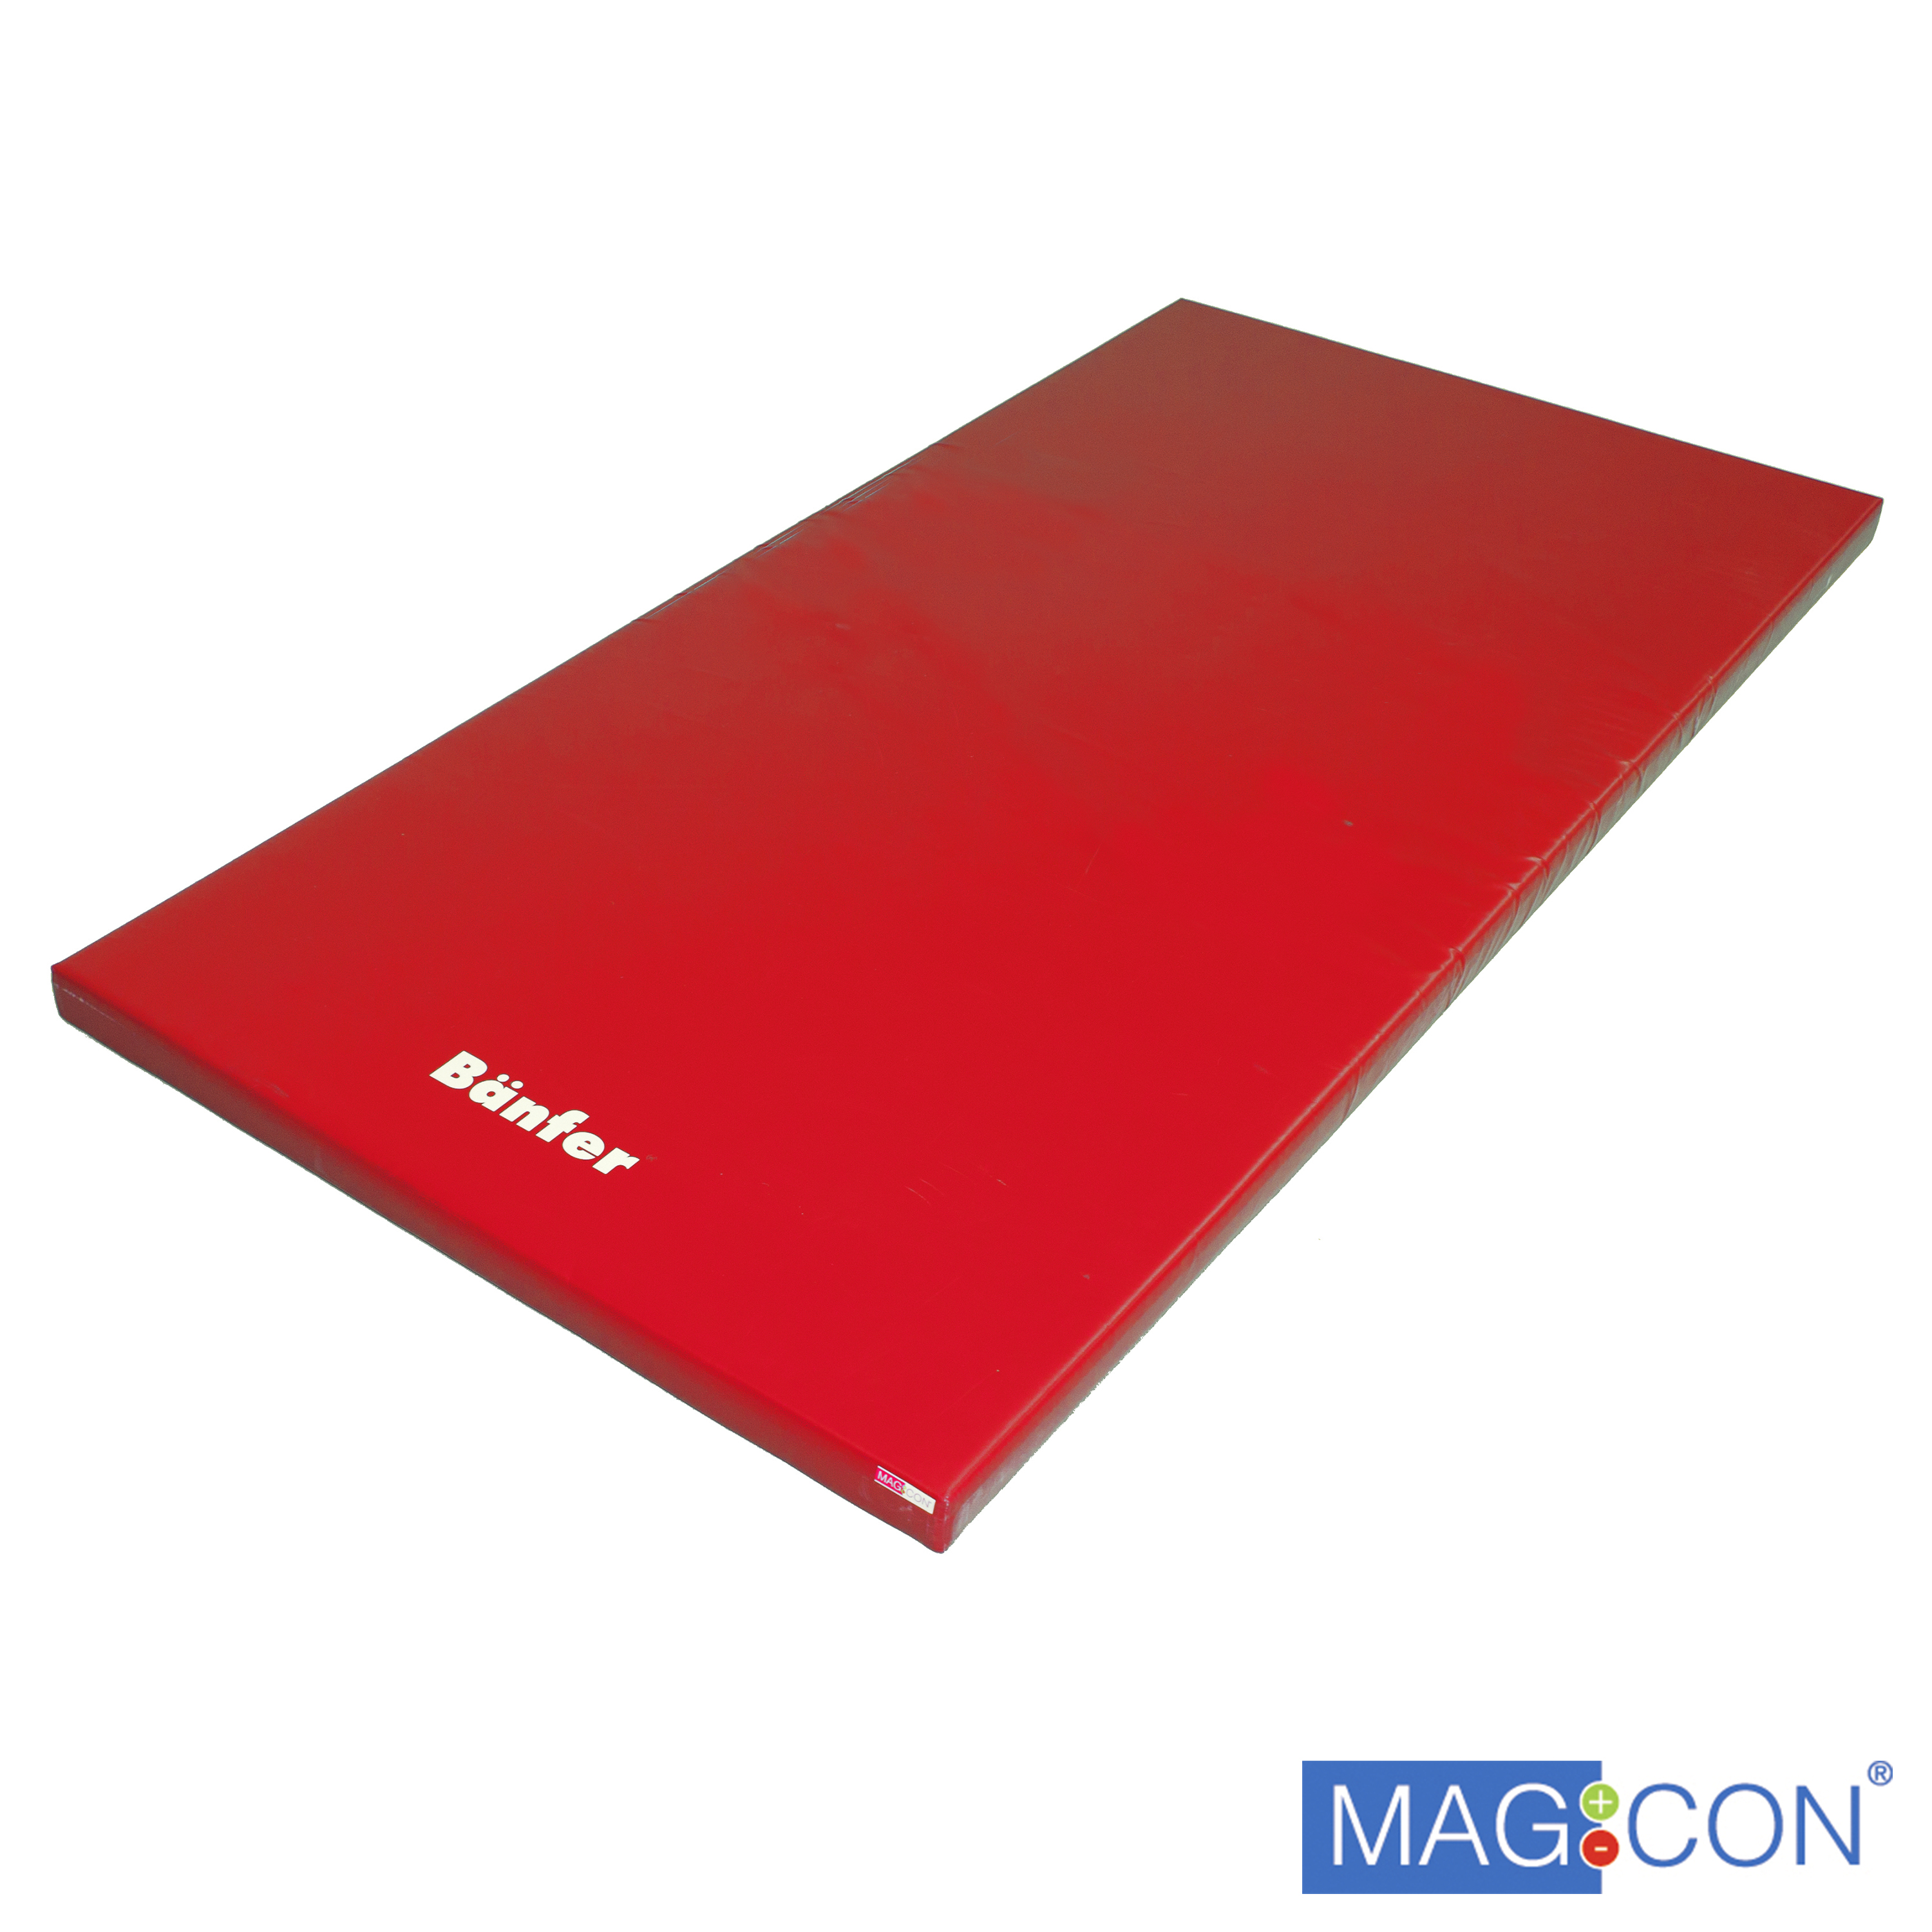 Super-Leichtturnmatte Magnetecken 200 x 125 x 8 cm, rot